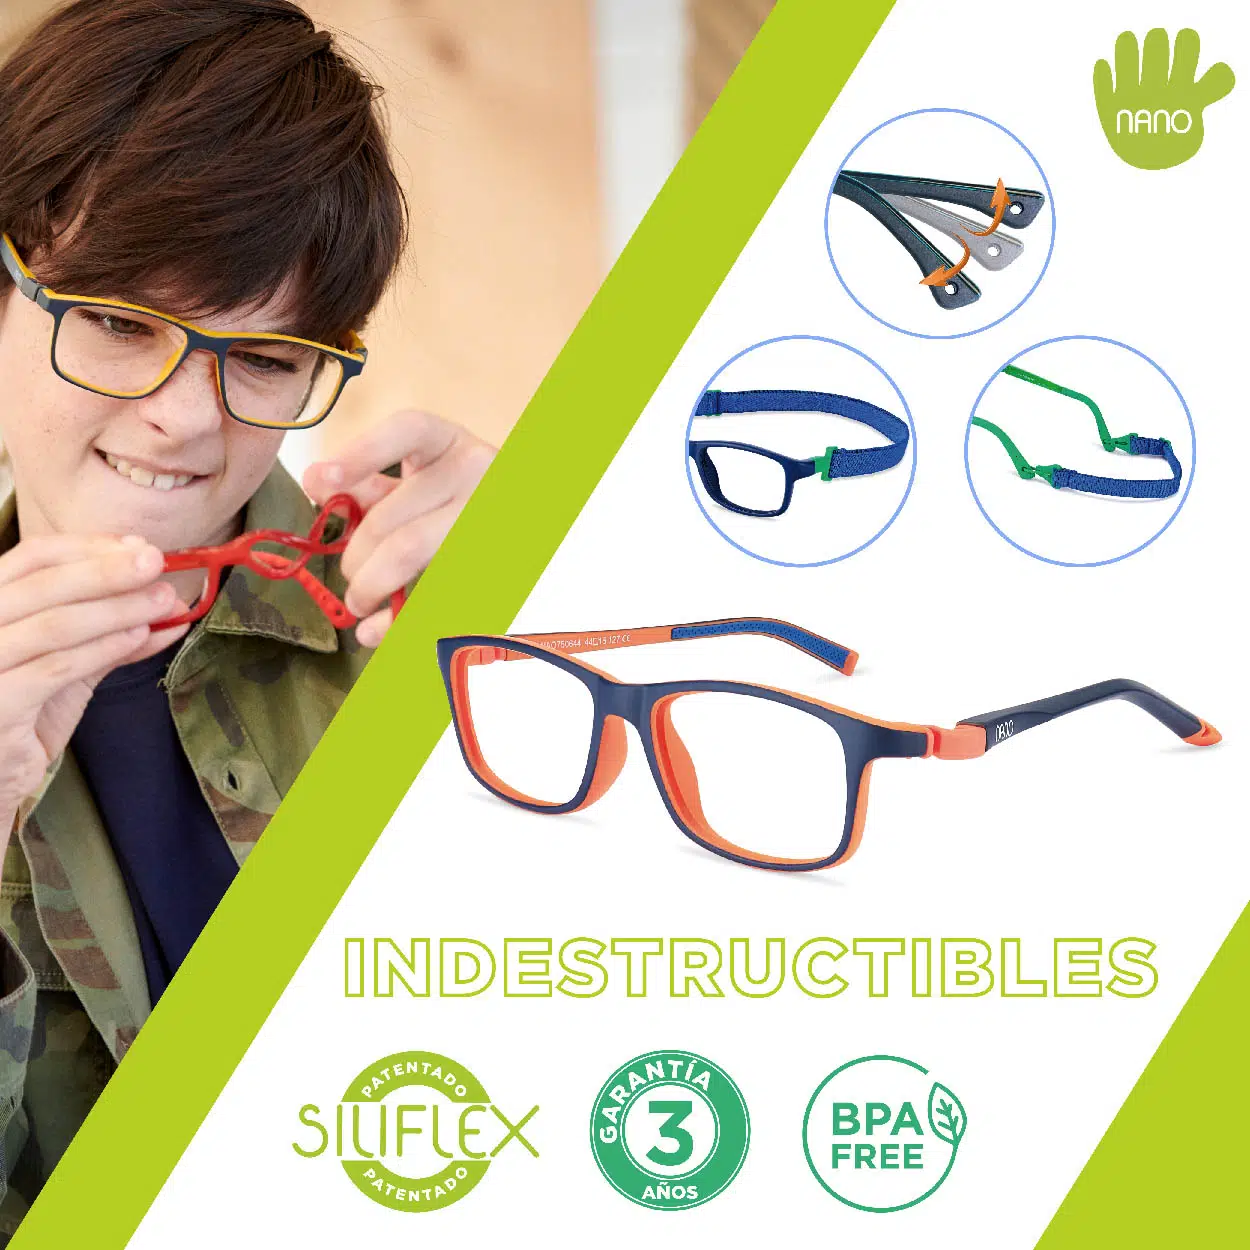 Gafas indestructibles y para NanoVista